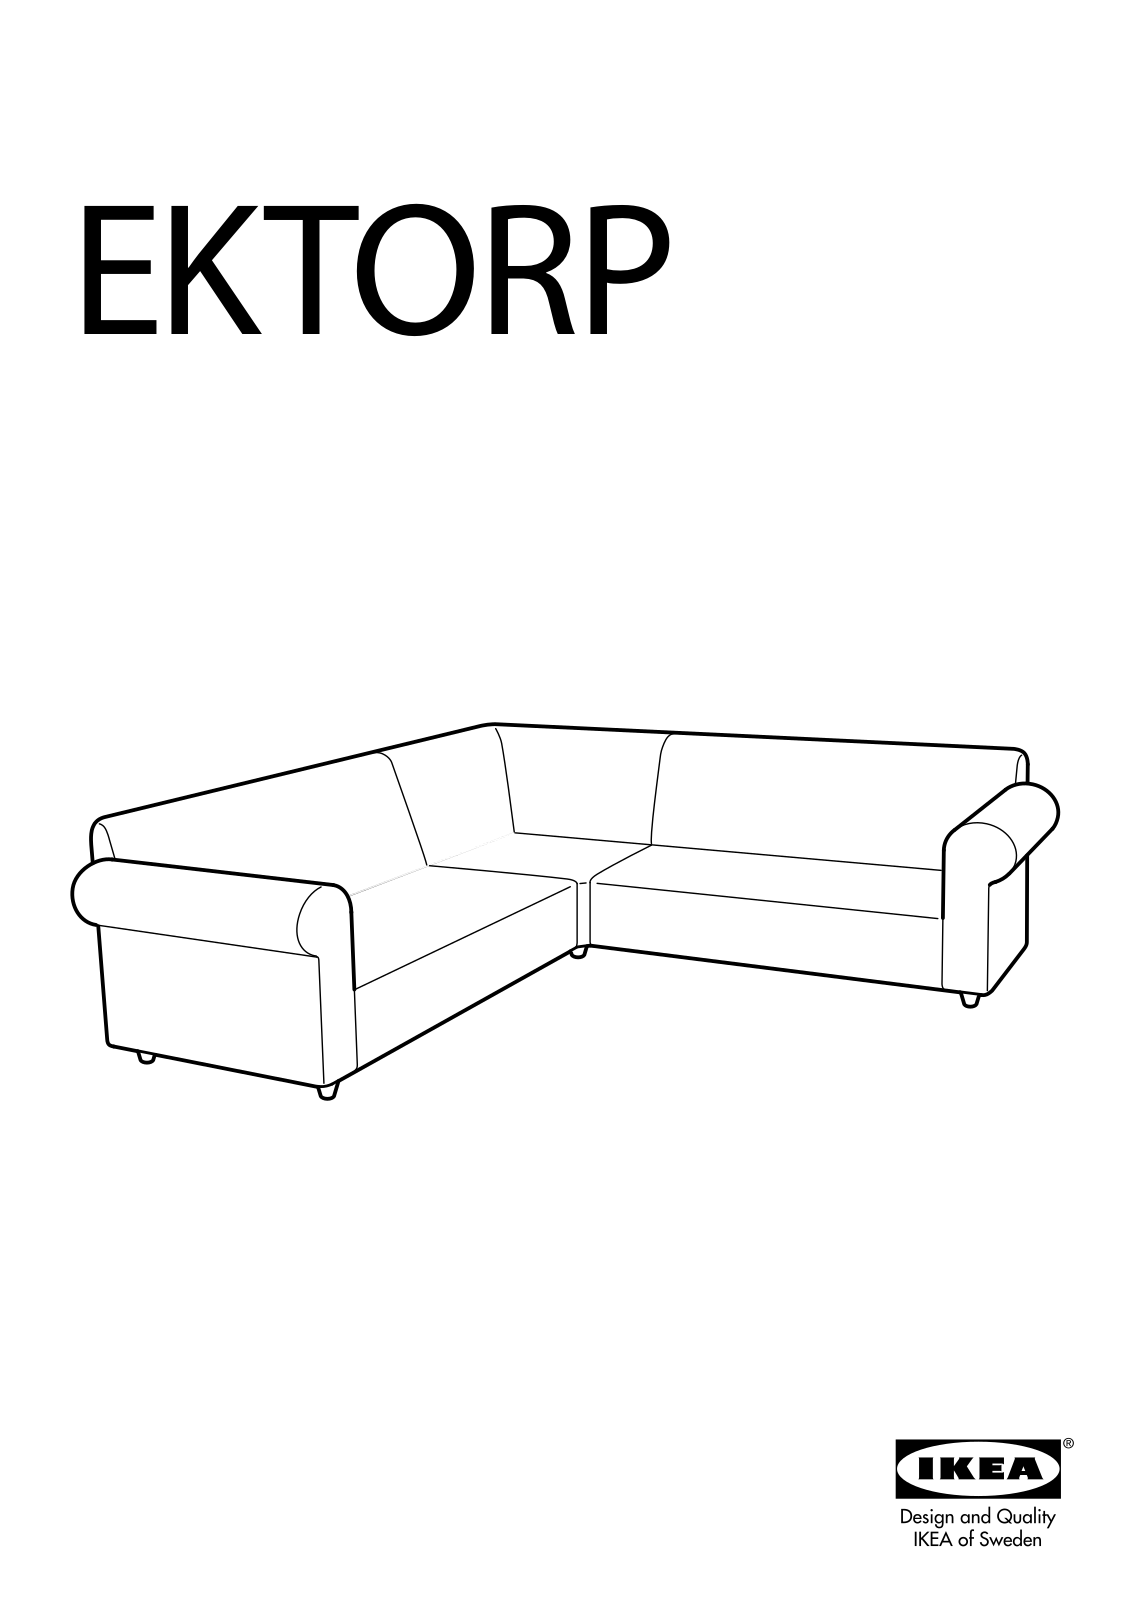 IKEA EKTORP CORNER SOFA FRAME 2+2 Assembly Instruction